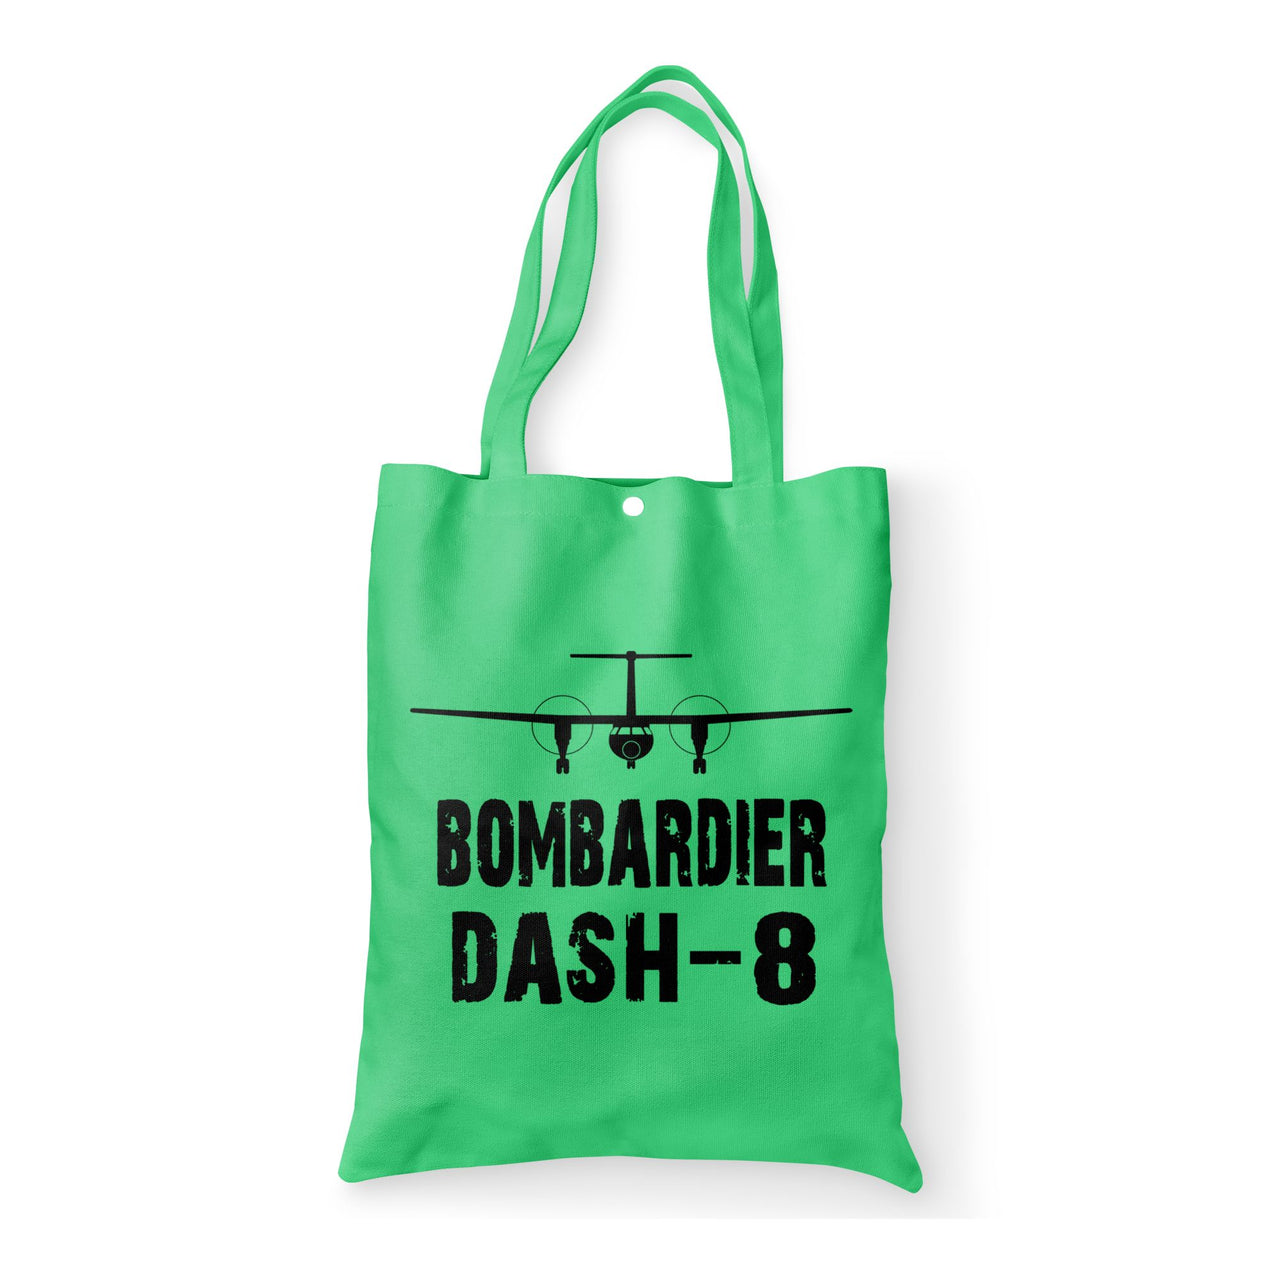 Bombardier Dash-8 & Plane Designed Tote Bags